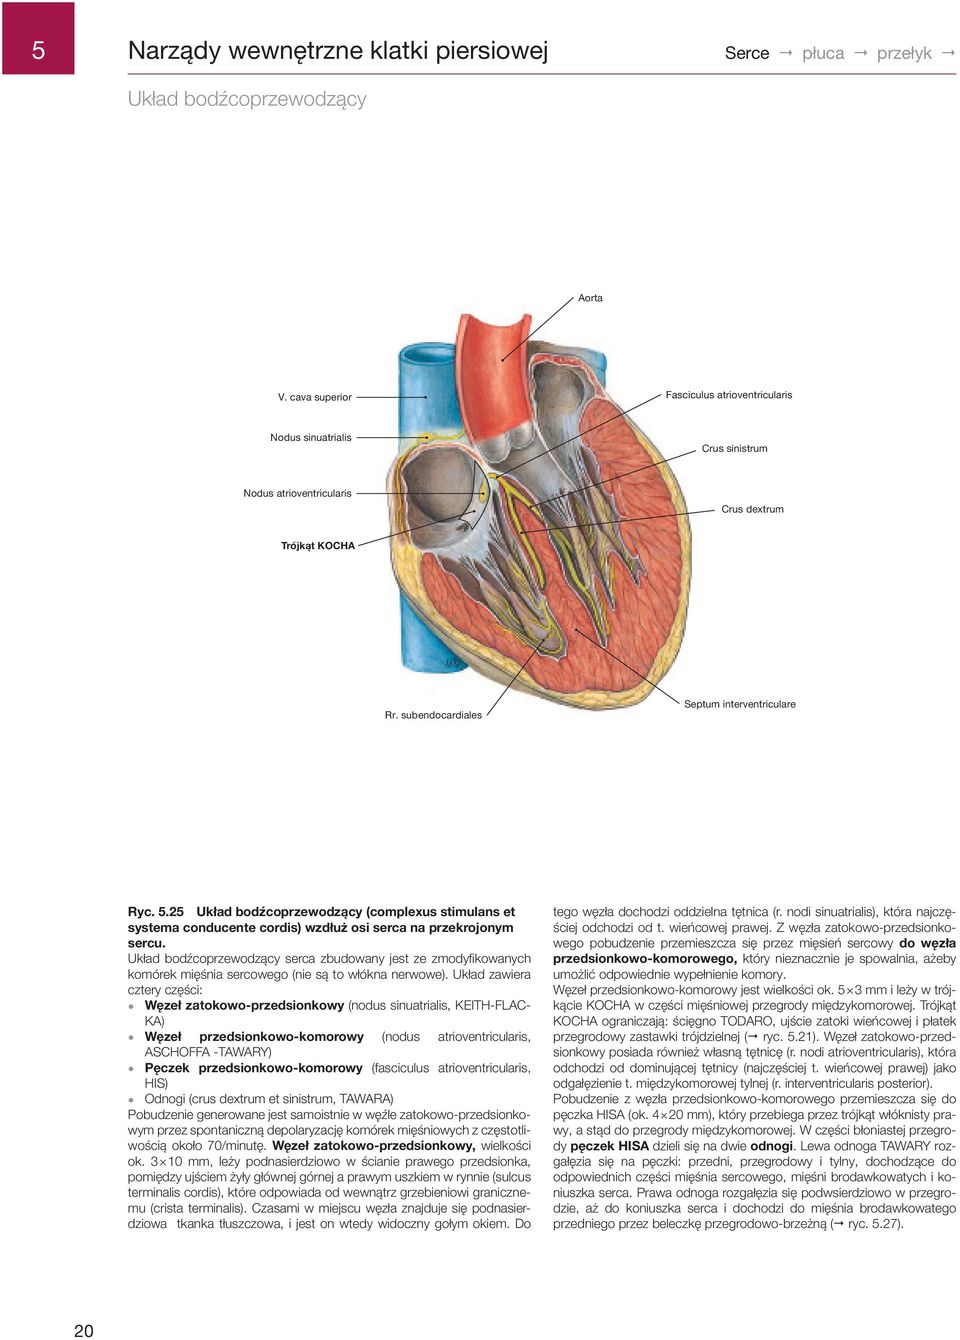 .2 Układ bodźcoprzewodzący (complexus stimulans et systema conducente cordis) wzdłuż osi serca na przekrojonym sercu.